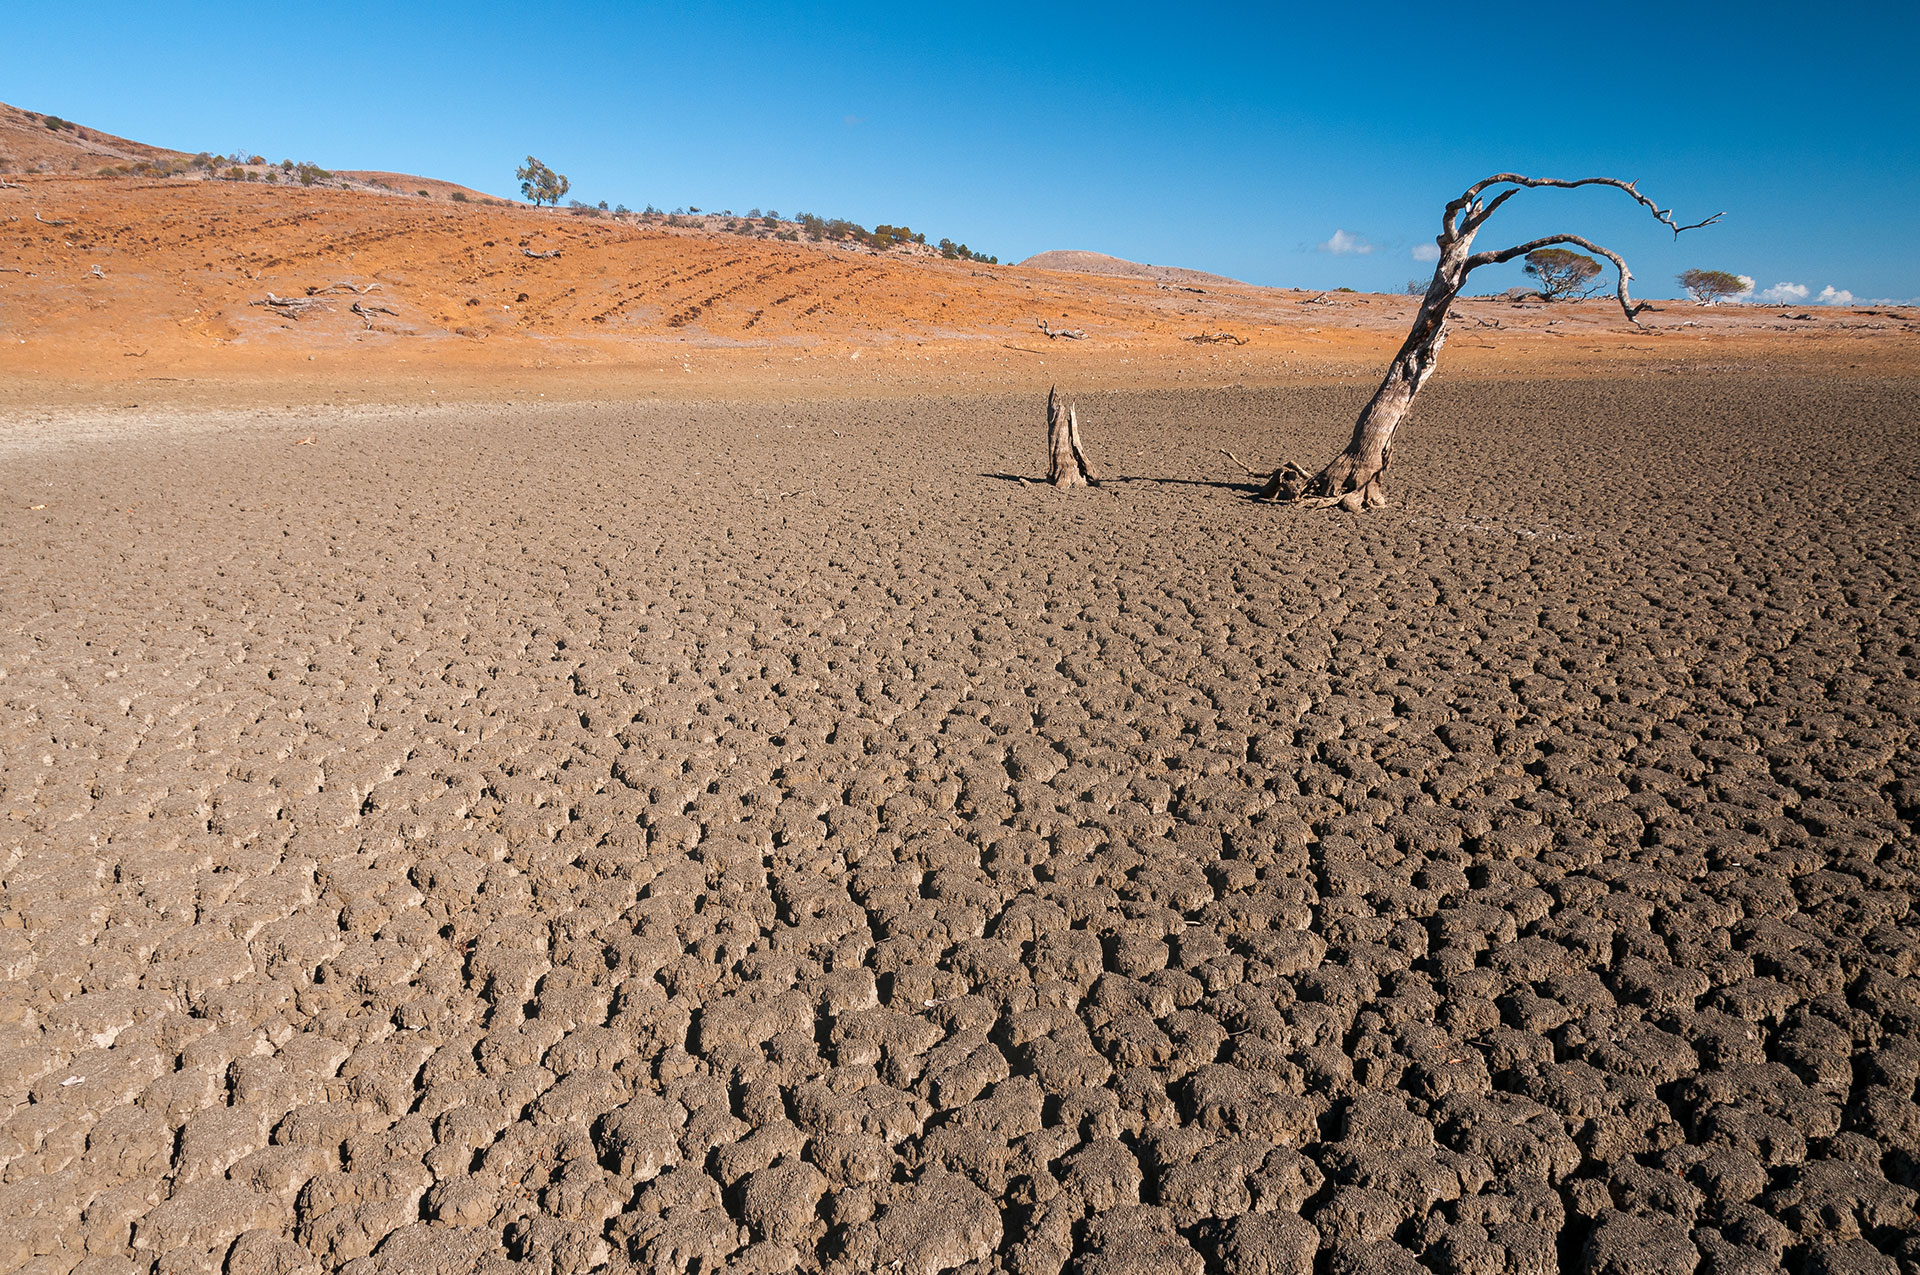 El fenómeno de La Niño también influye en las sequías, de acuerdo a otro estudio científico realizado en Australia (Getty)